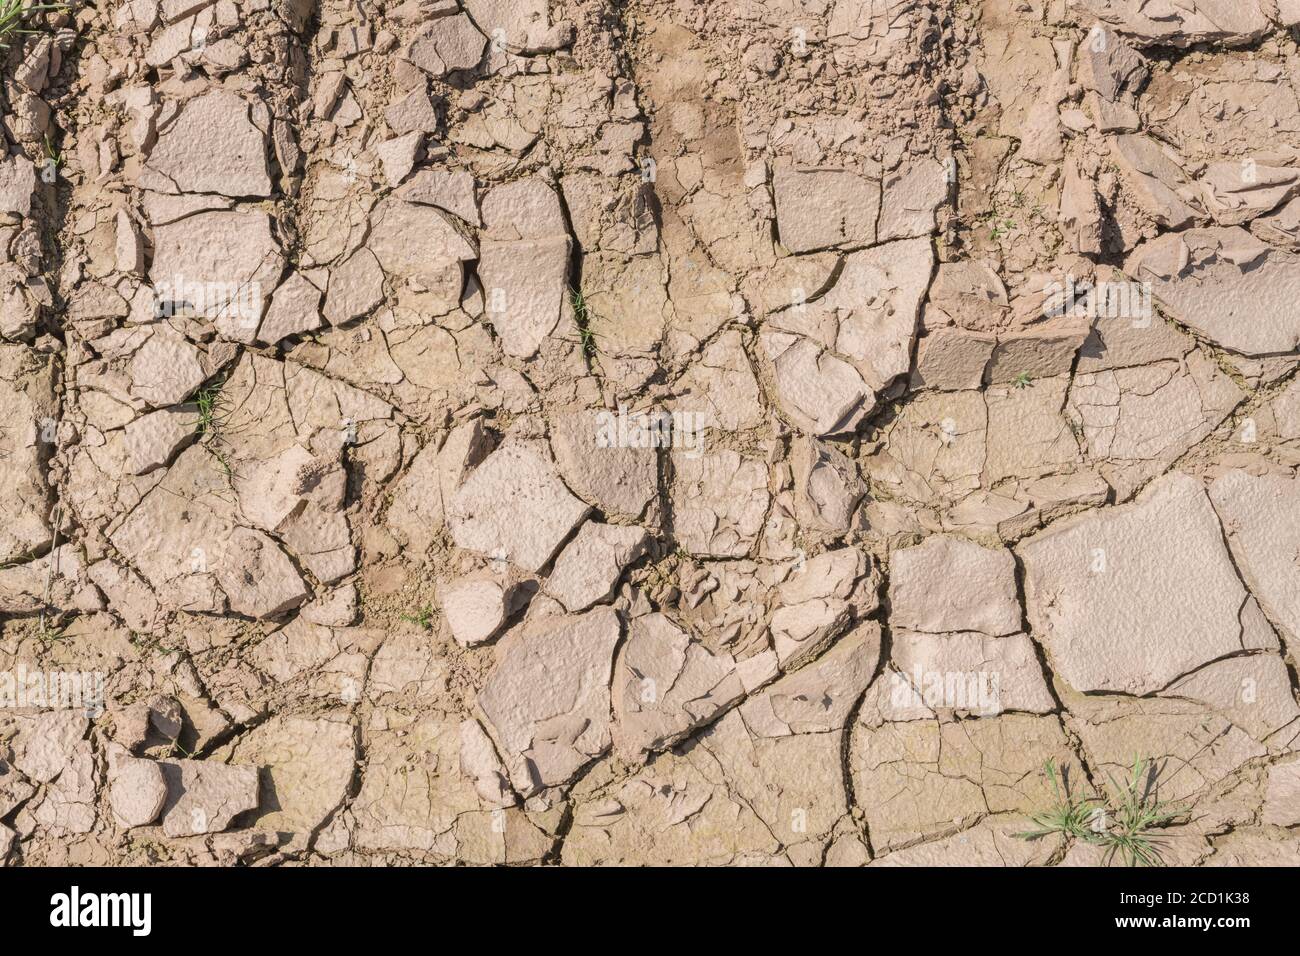 Boden verkrustet im Feld zeigt Risse, wie Schlamm austrocknet und Feuchtigkeit verdunstet. Für Bodenwissenschaften, Dürre in Großbritannien, Wasserknappheit, Risse bilden sich. Stockfoto